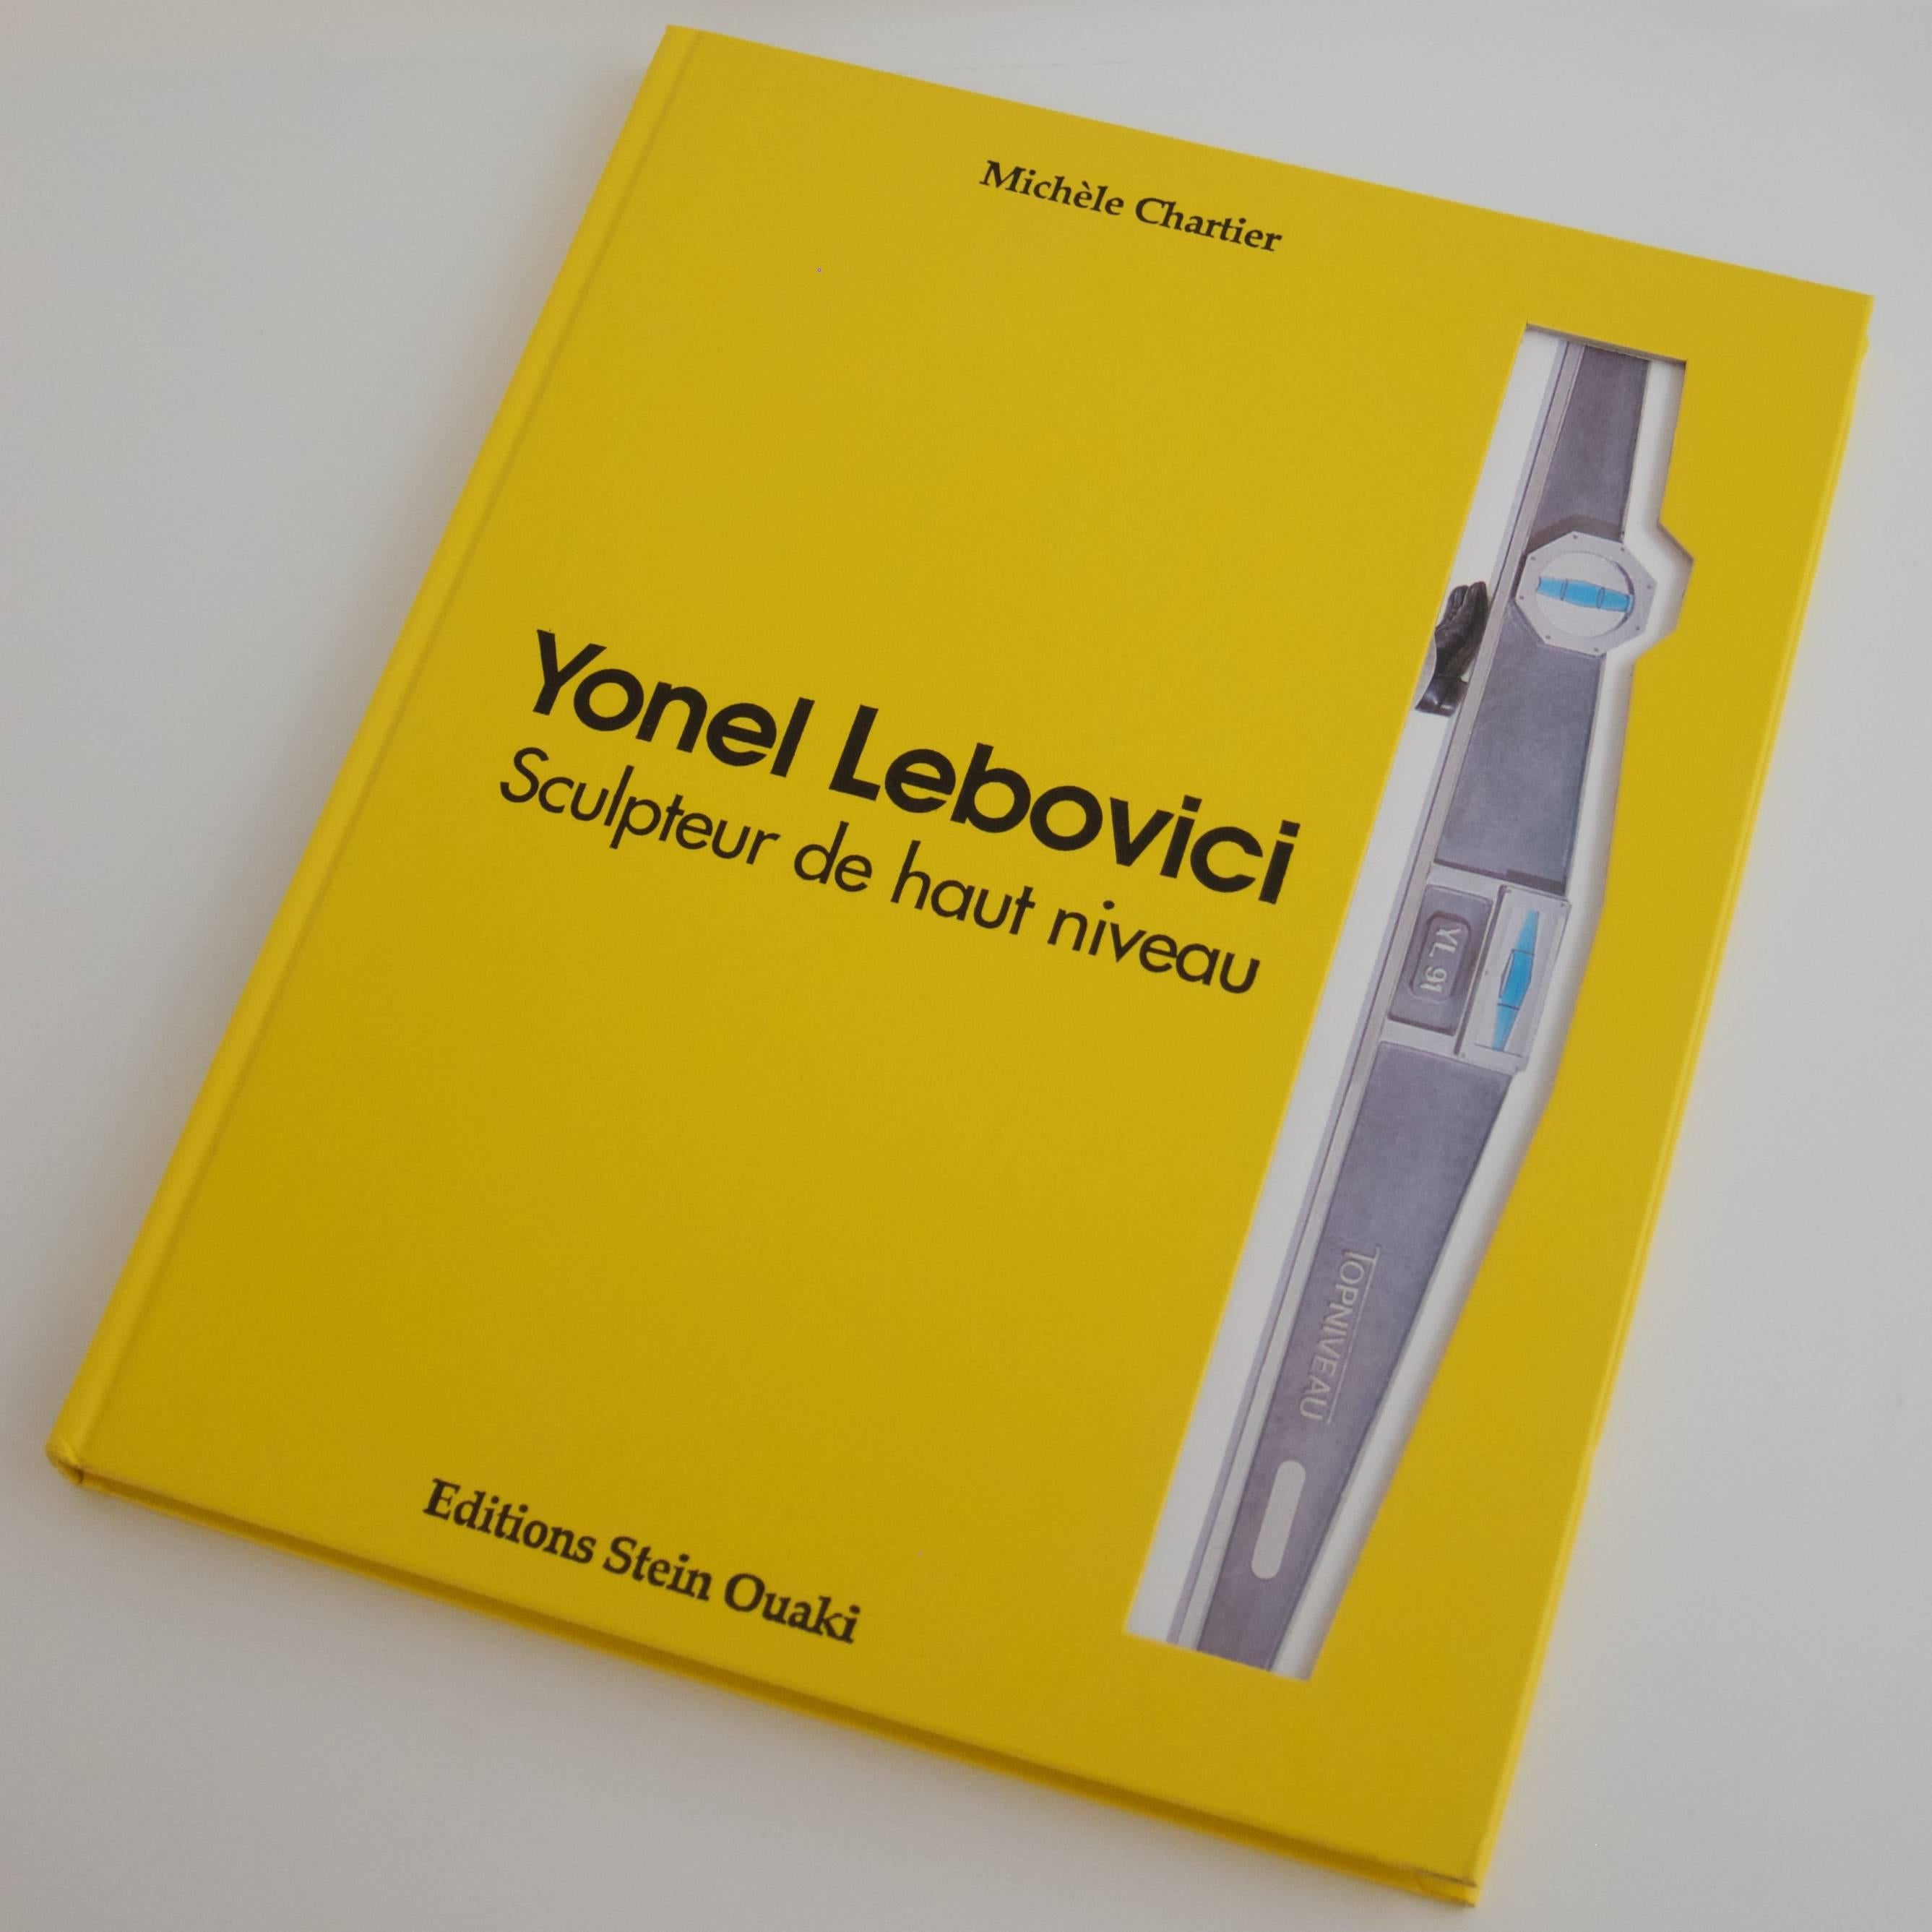 French Rare Book: Yonel Lebovici, Sculpteur de haut niveau For Sale